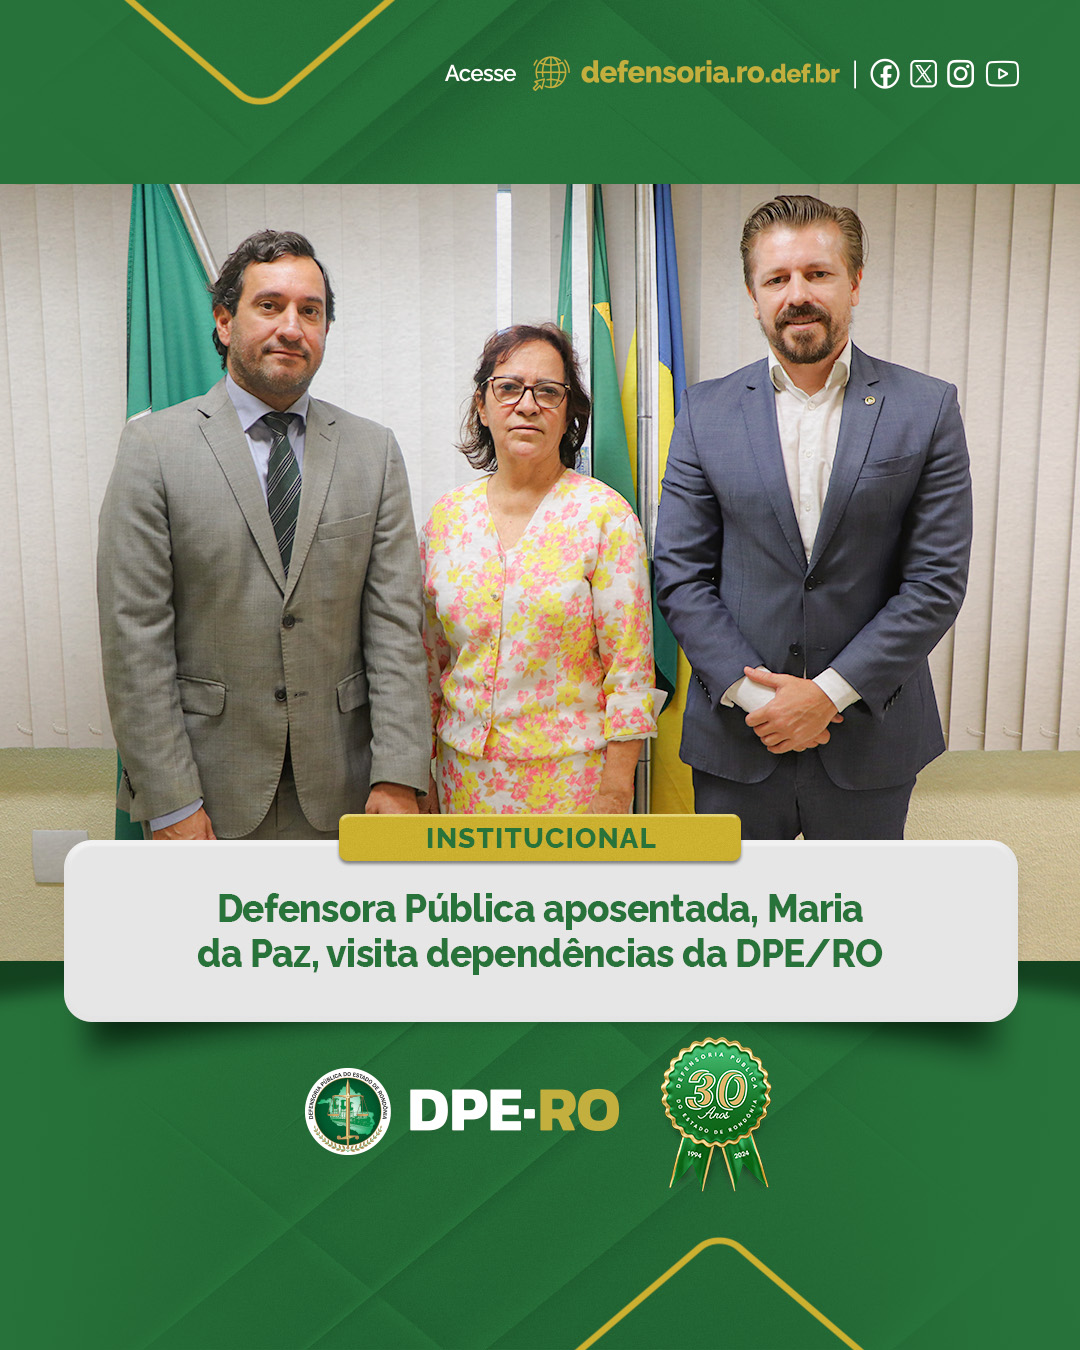 Defensora Pública aposentada, Maria da Paz, visita dependências da DPE/RO